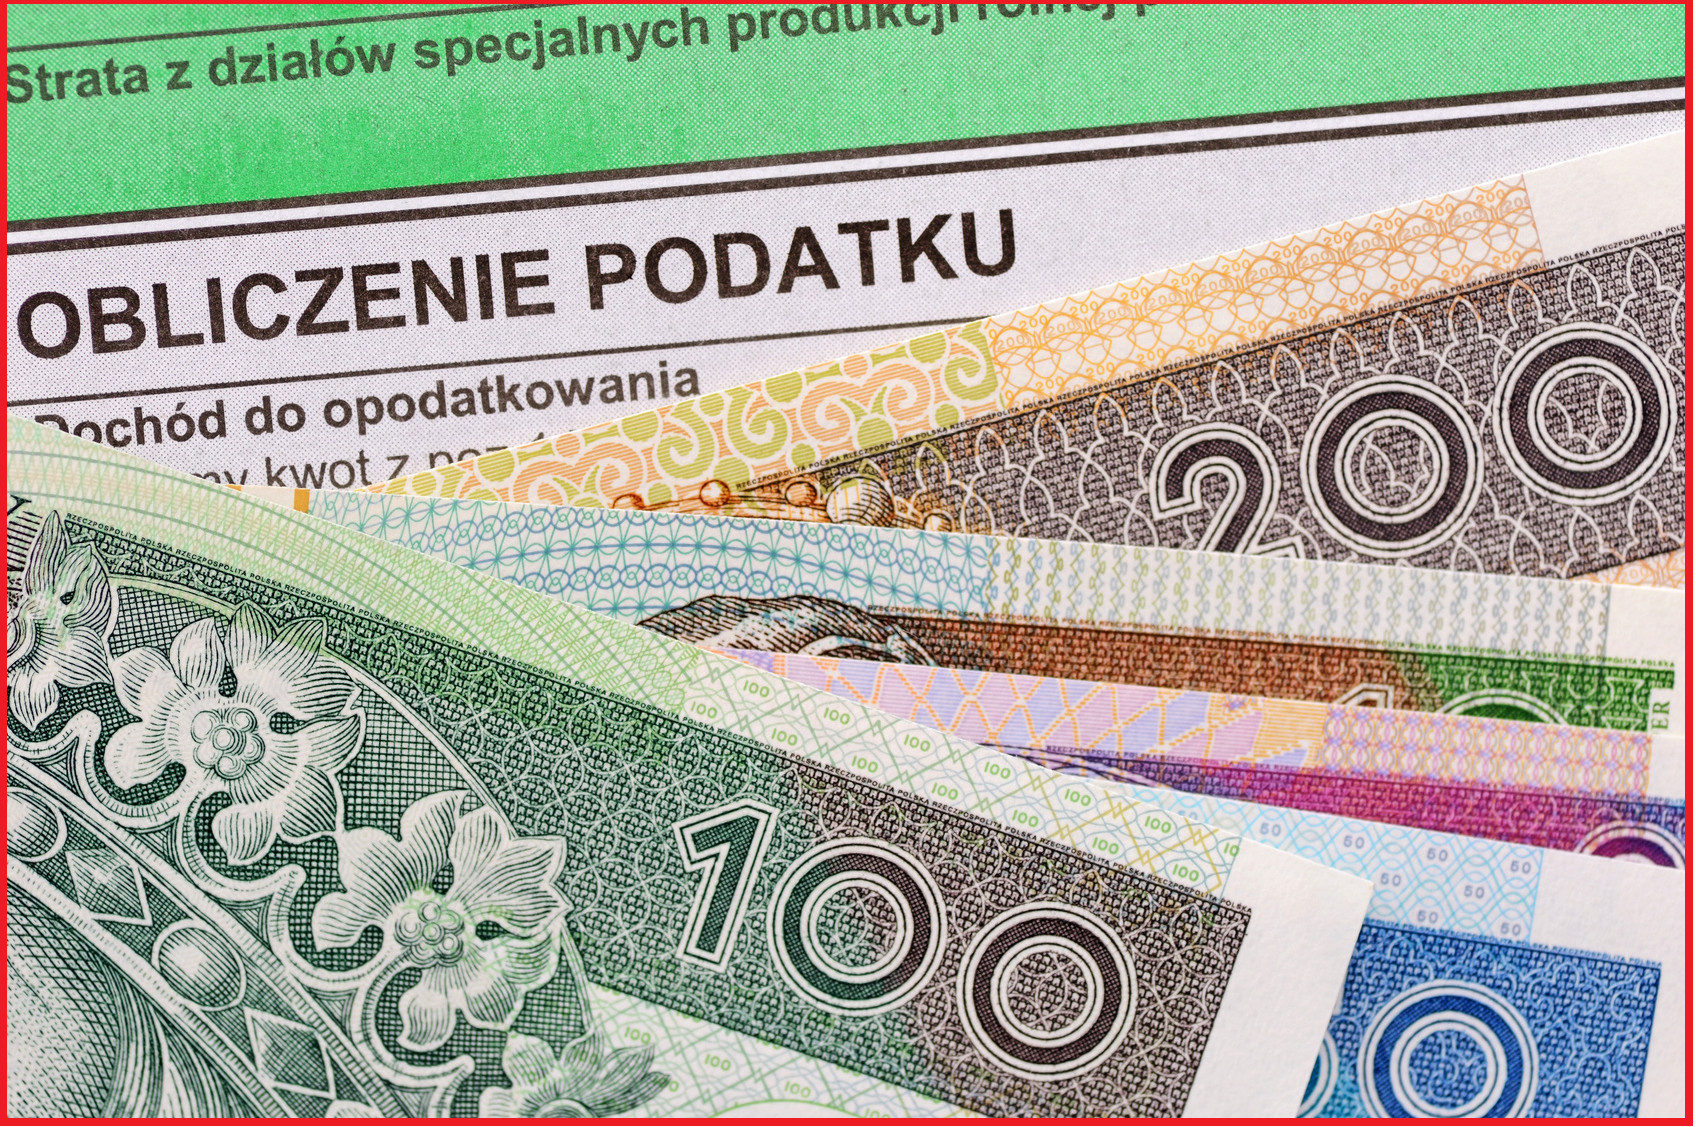 Do Kiedy Zwracaja Podatek 2019 Jaki podatek rolny w 2019 r?|KalendarzRolnikow.pl